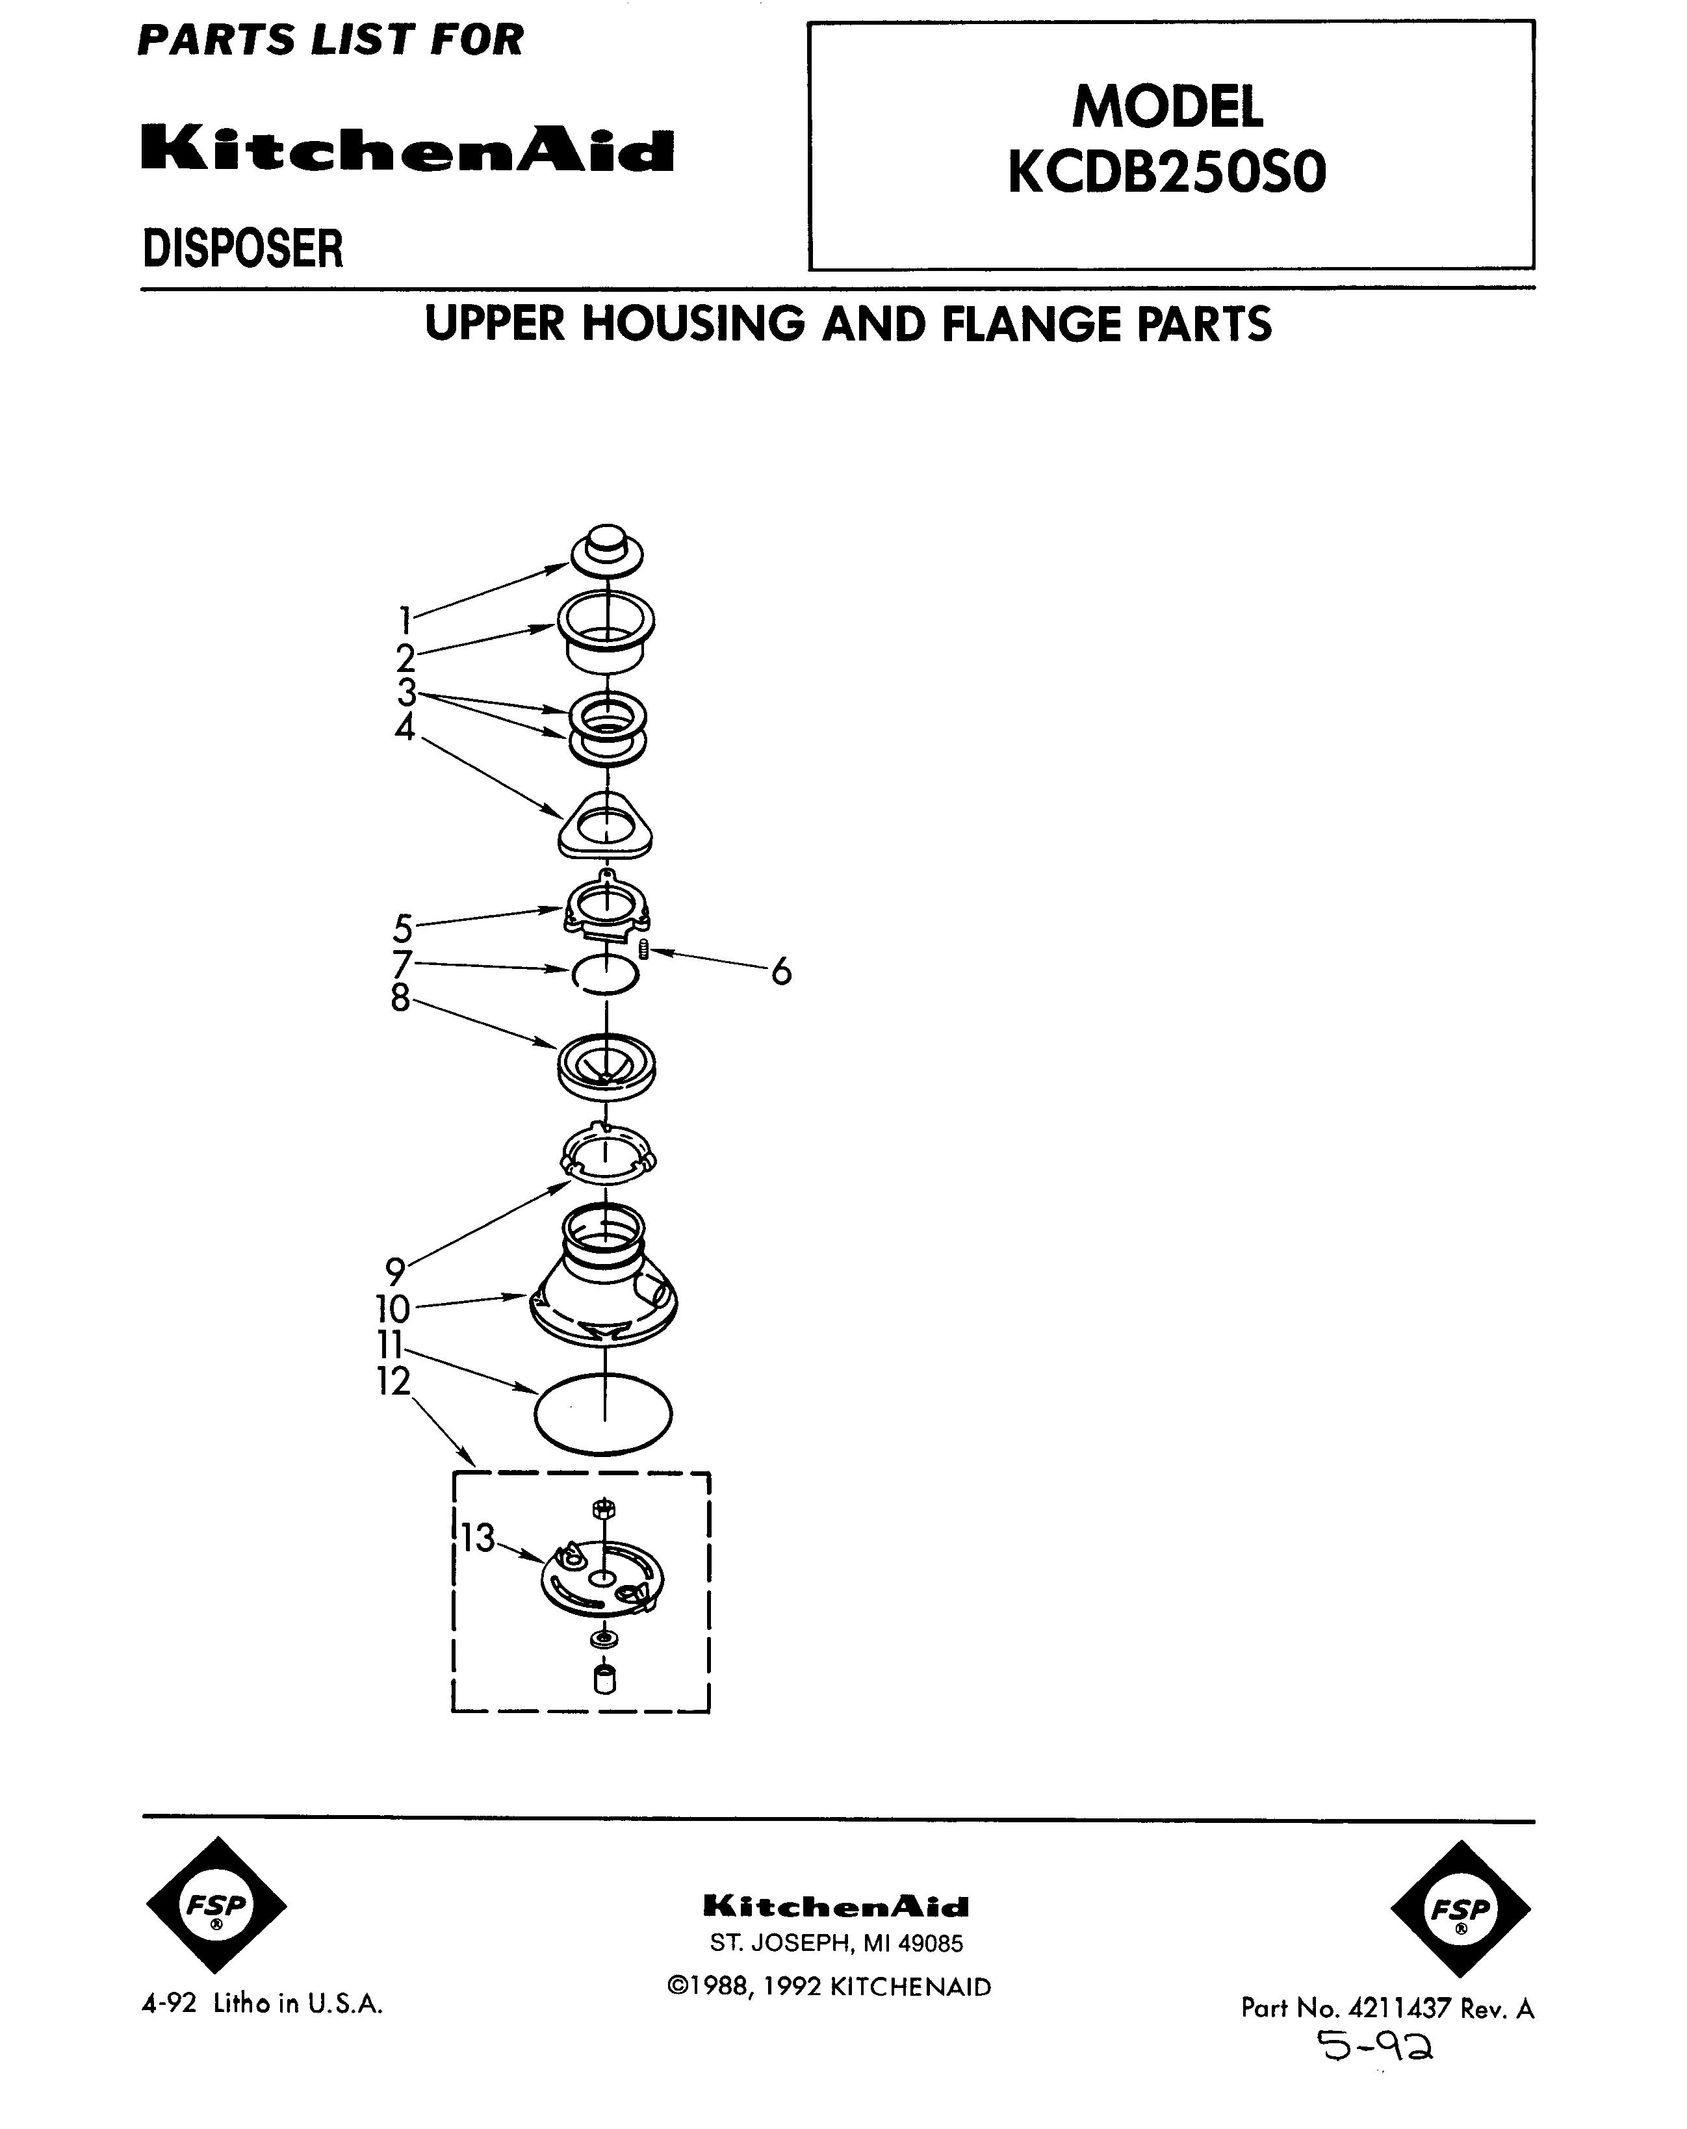 KitchenAid KCDB250S0 Garbage Disposal User Manual